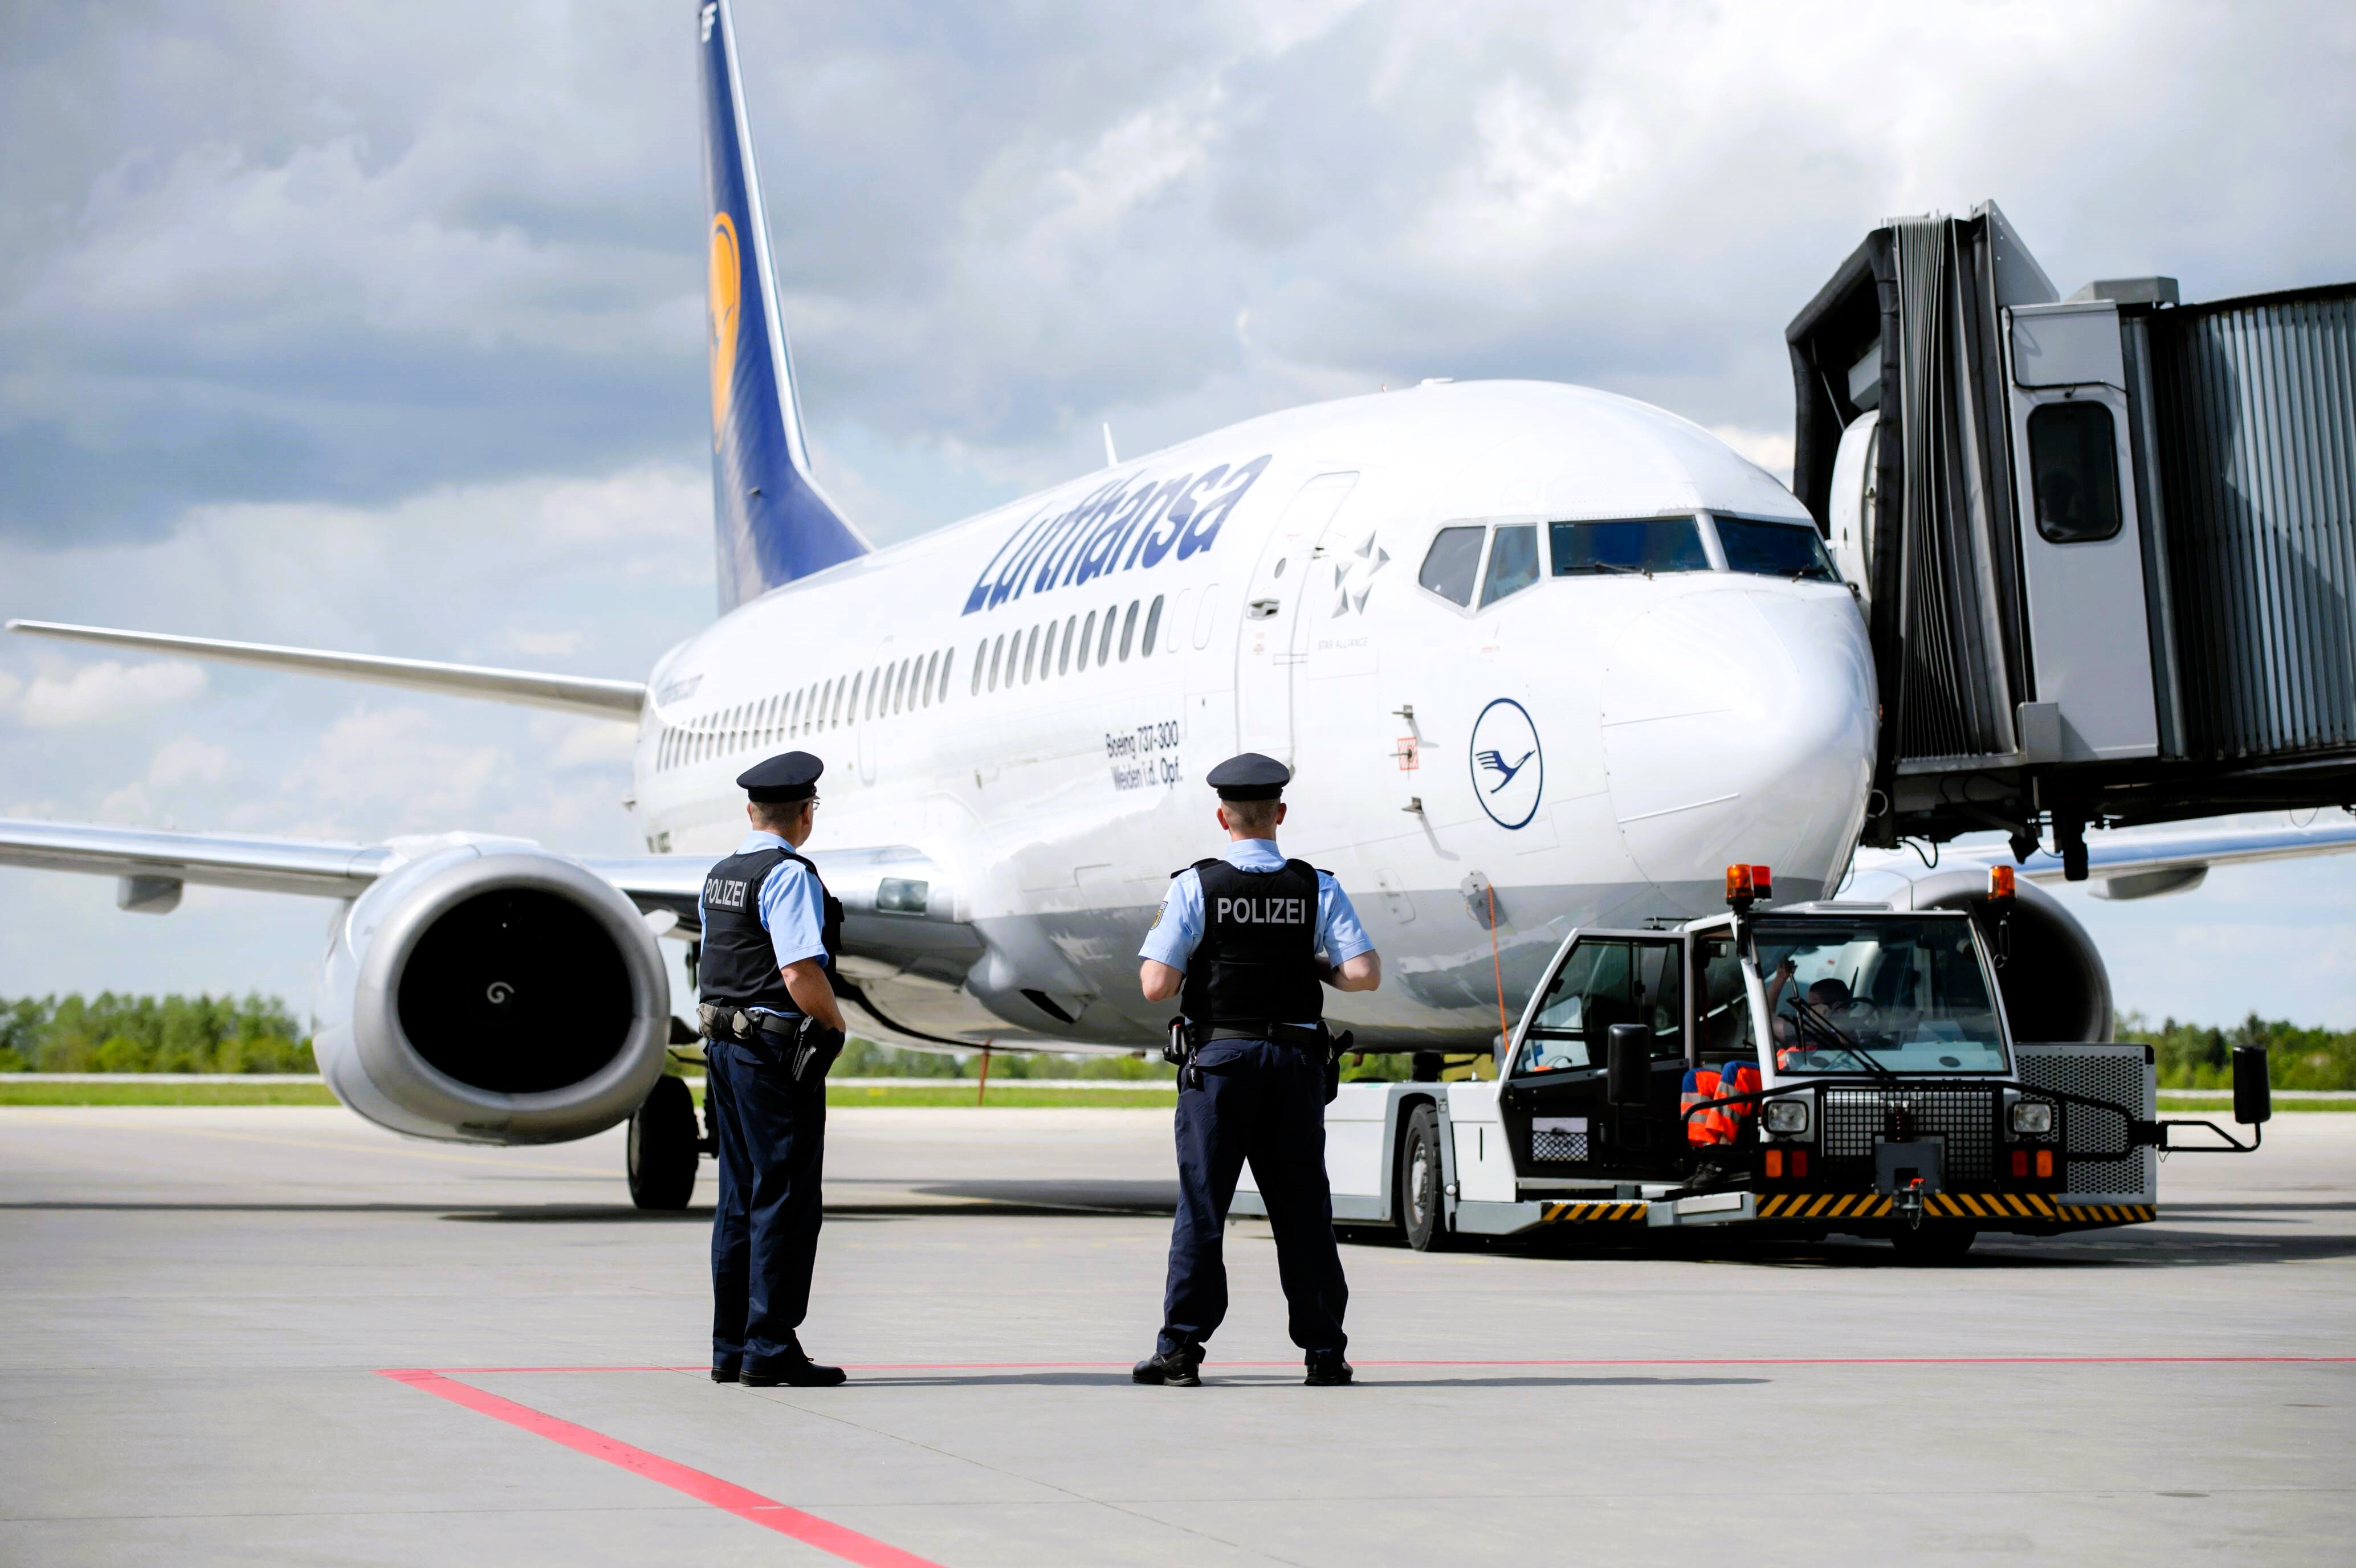 Sex im Flugzeug! Peinlicher Zwischenfall am Flughafen München - Polizei muss pöbelndes Sex-Paar aus Lufthansamaschine holen!